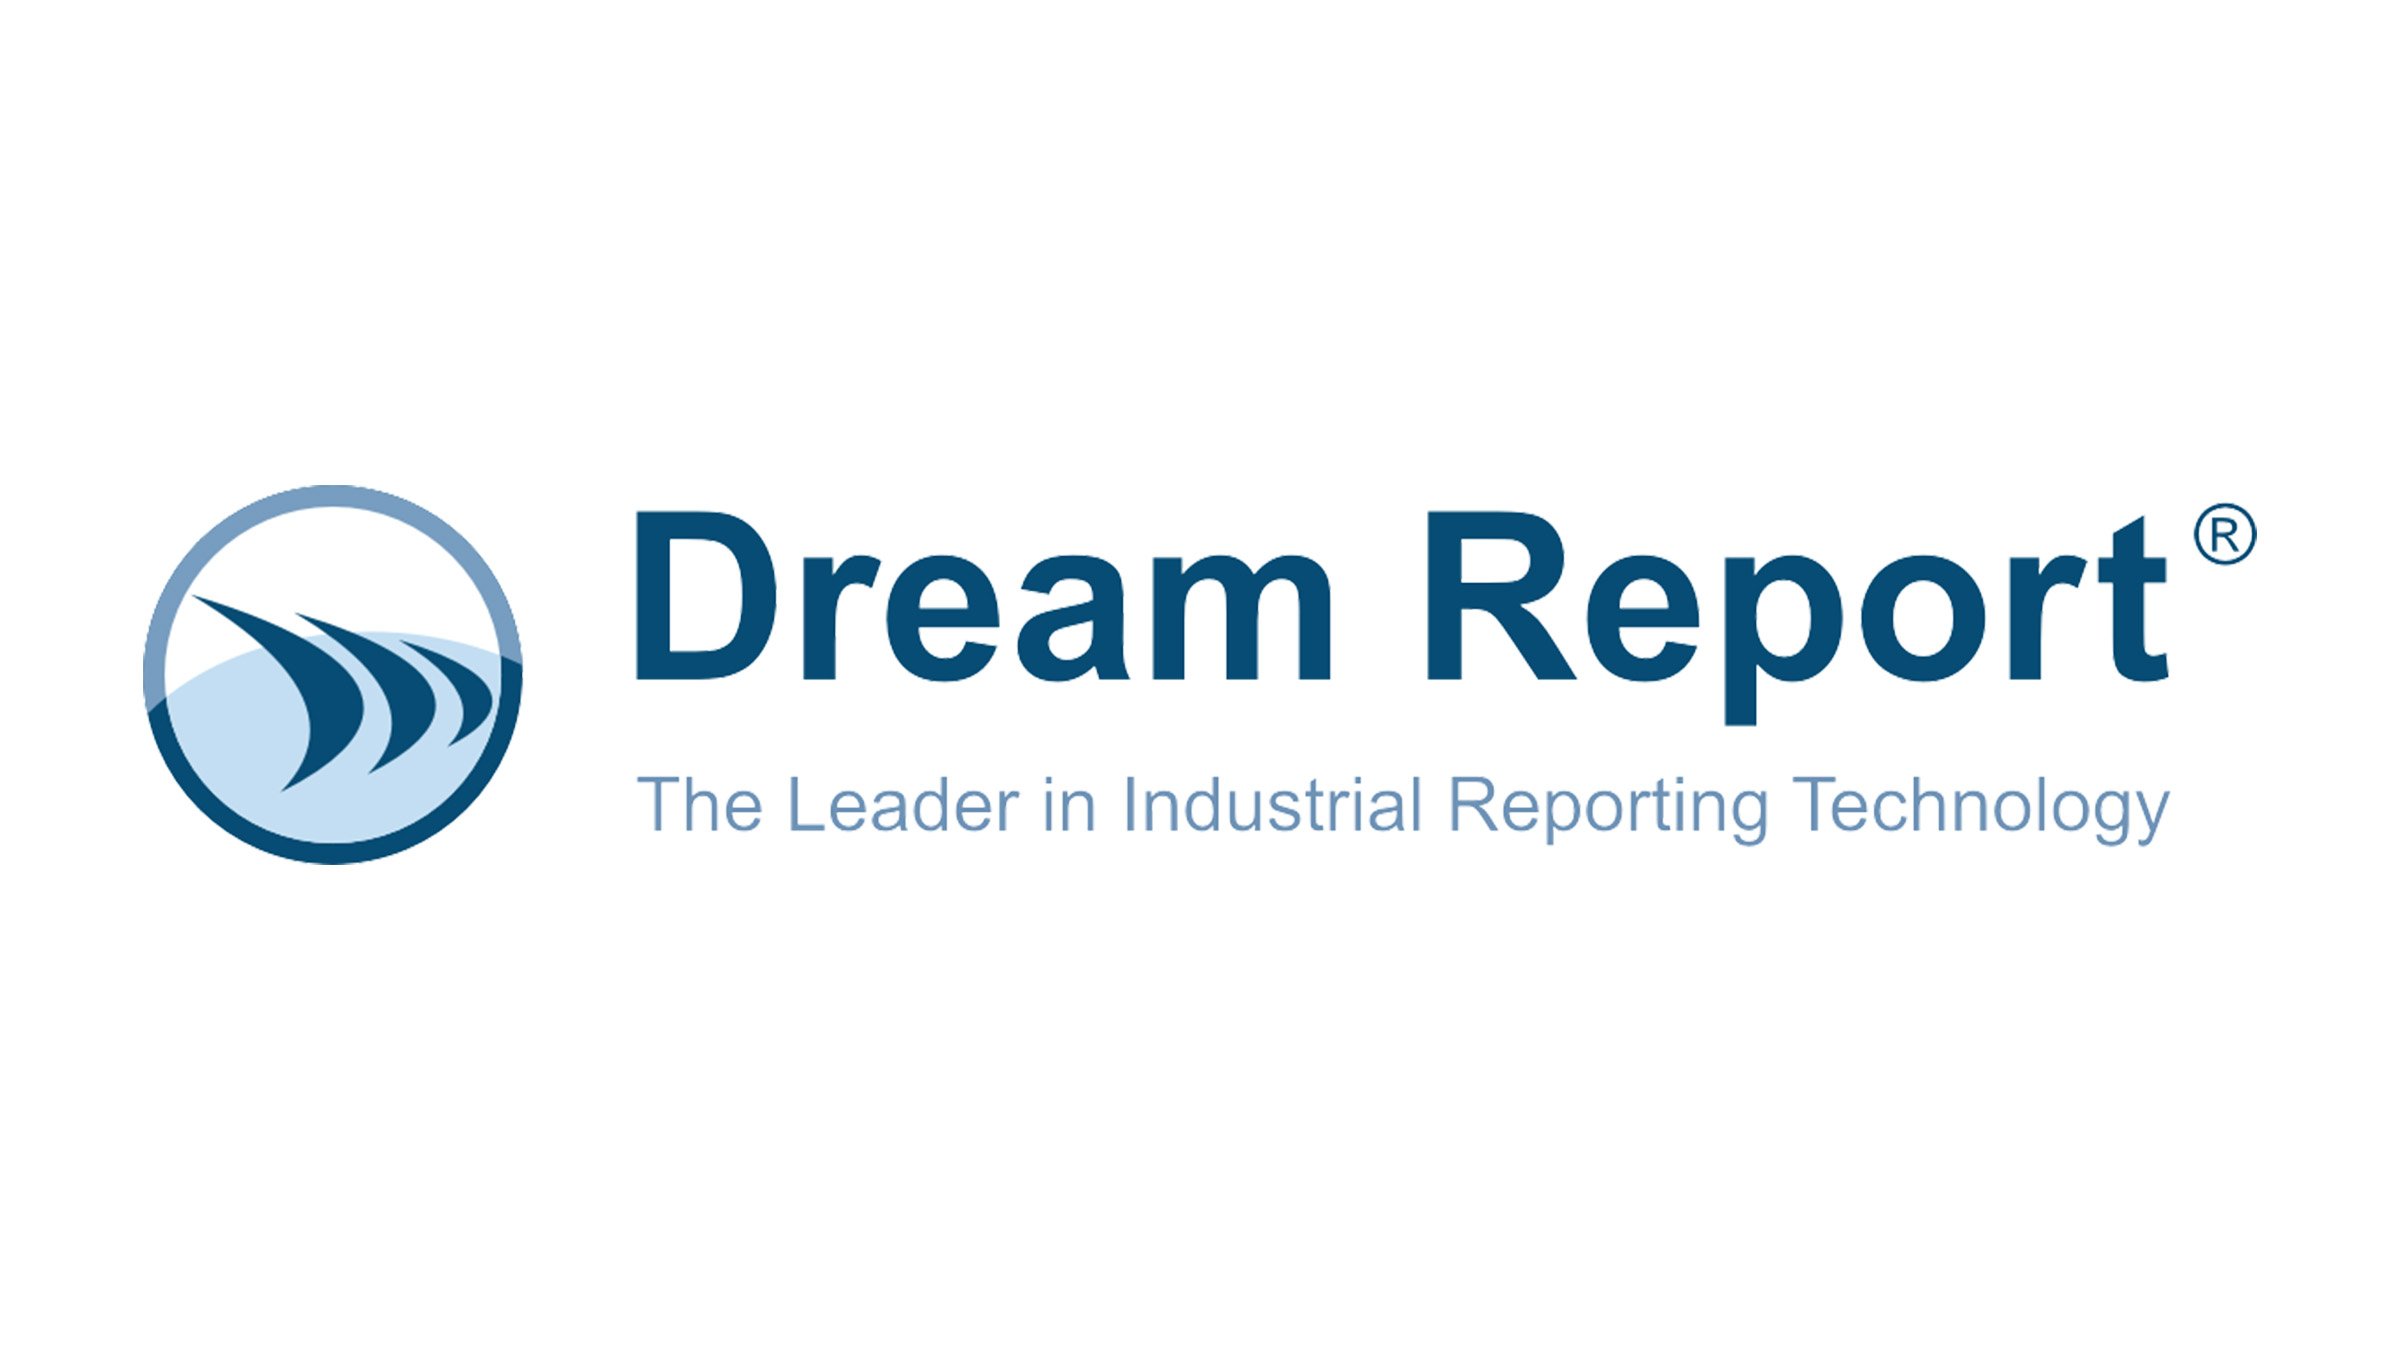 Dream Report with tagline logo